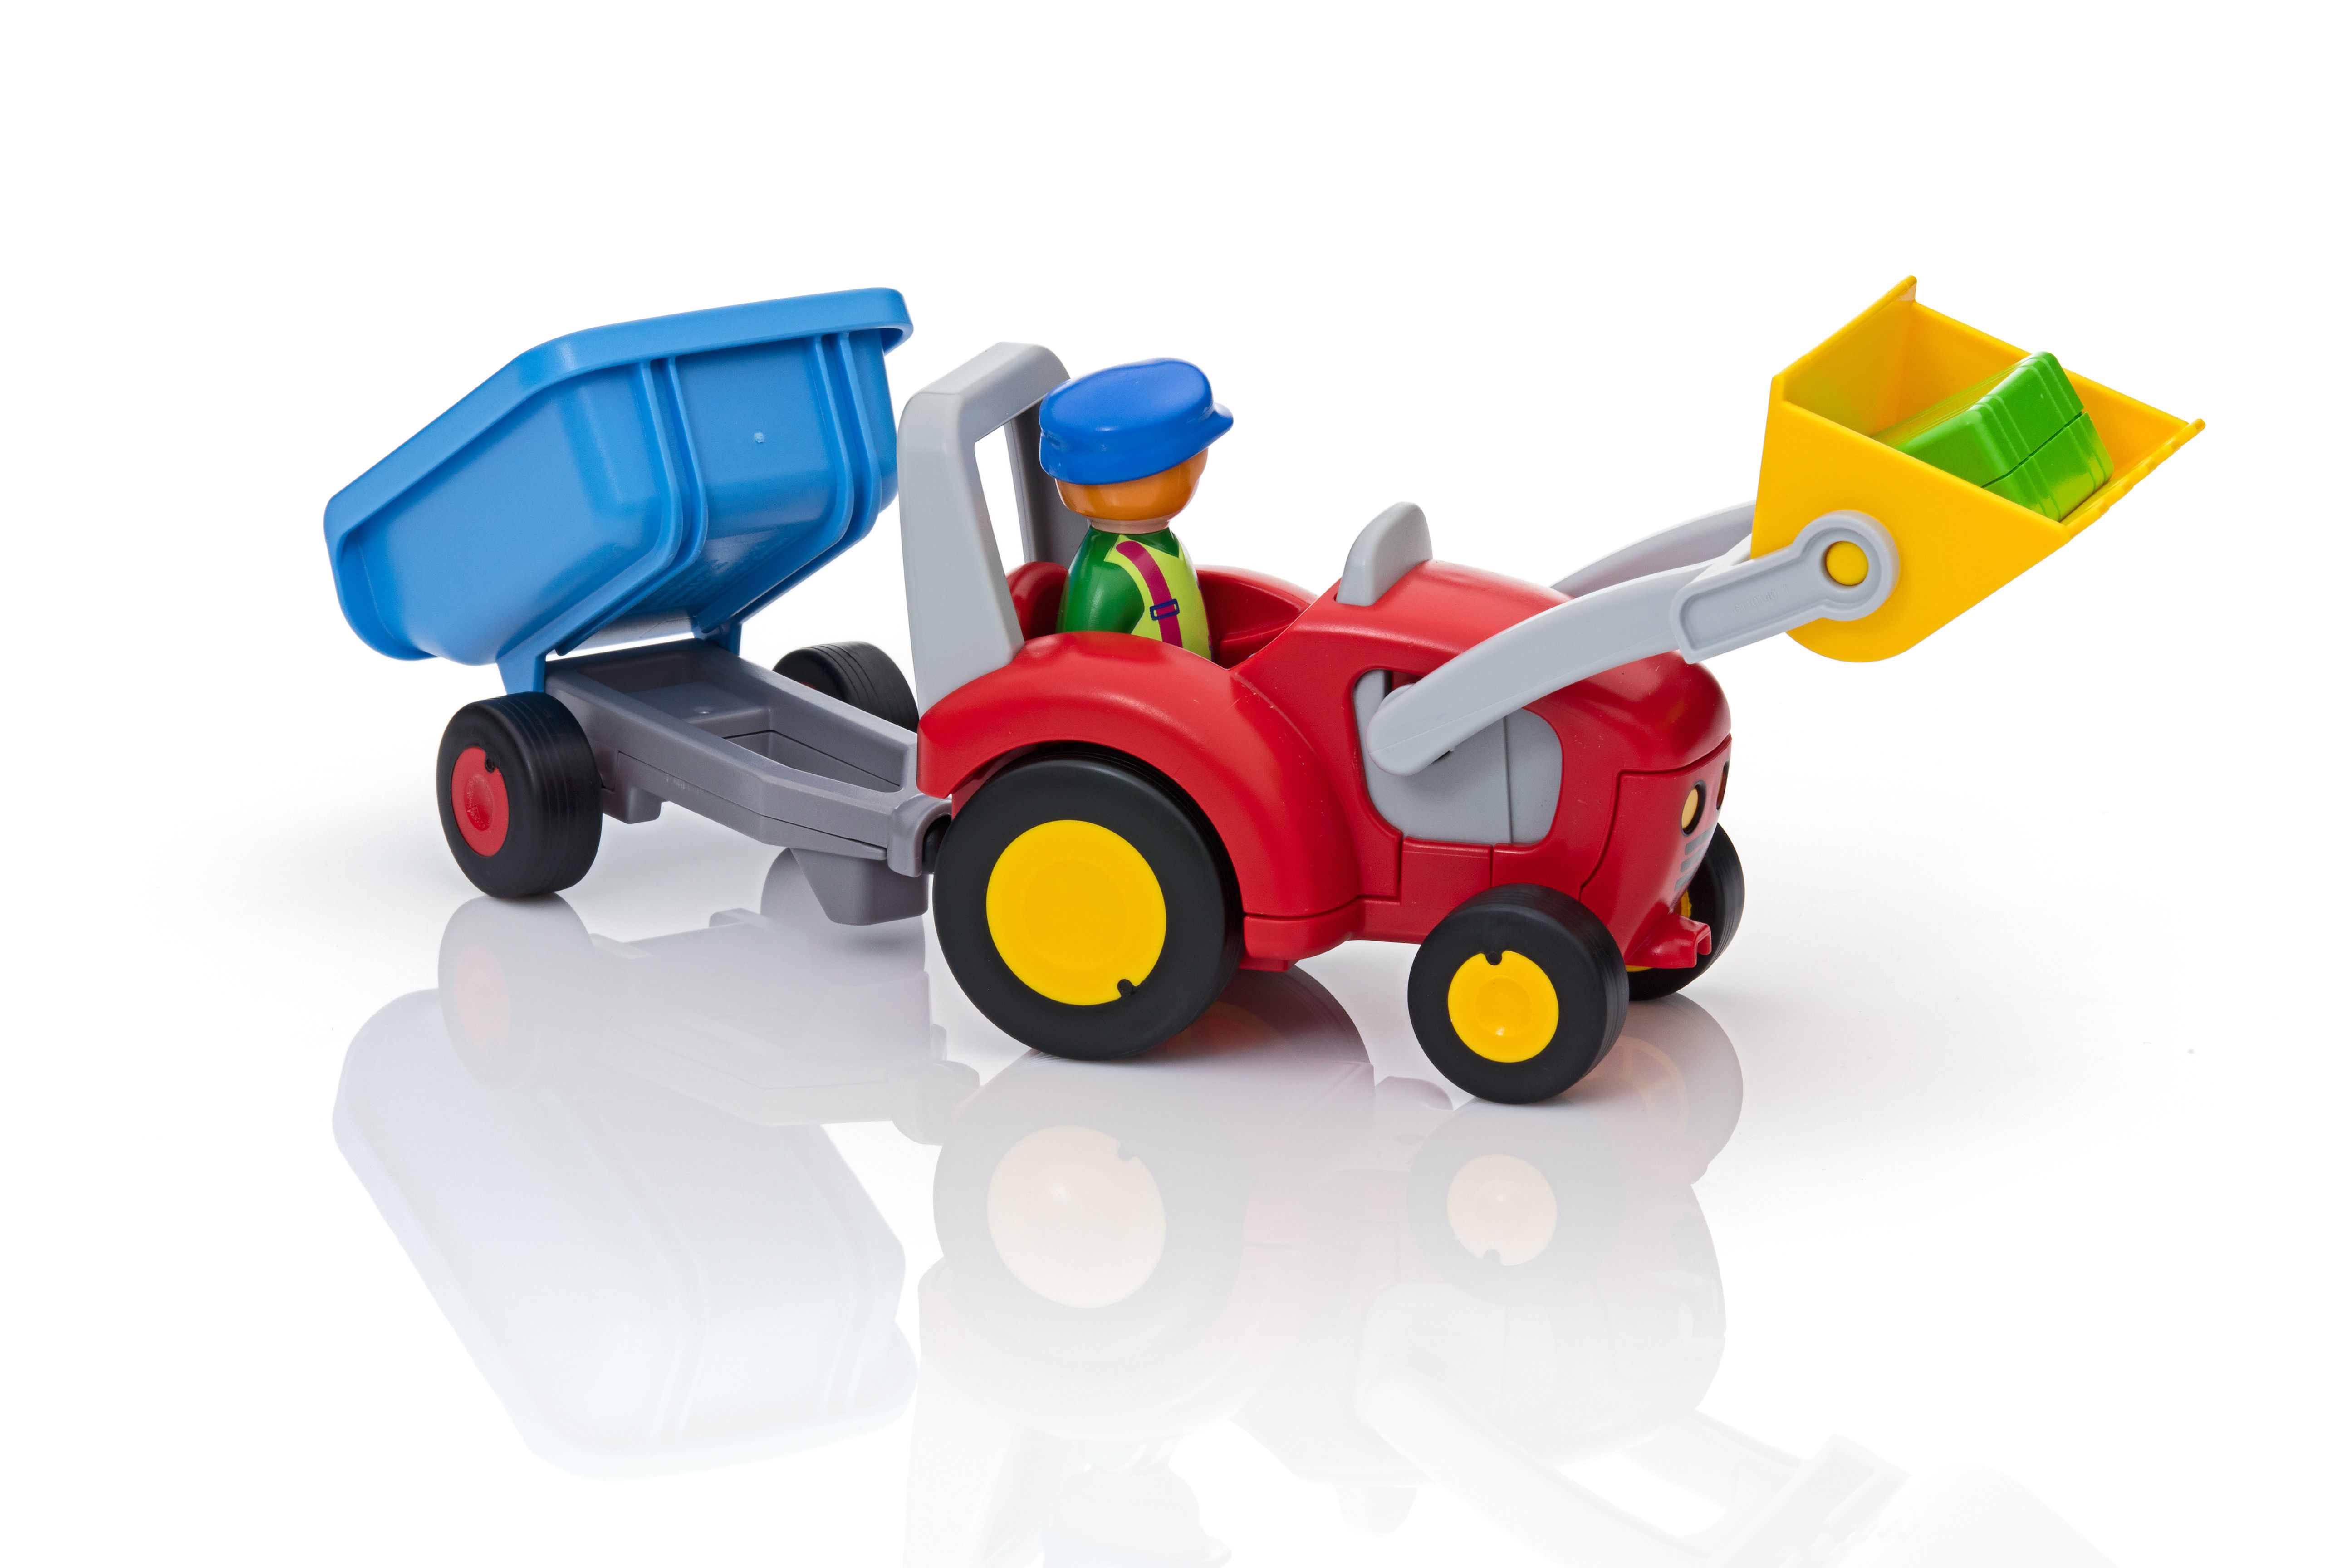 PLAYMOBIL - 6964 - PLAYMOBIL 1.2.3 - Fermier avec tracteur et remorque  jaune - Playmobil